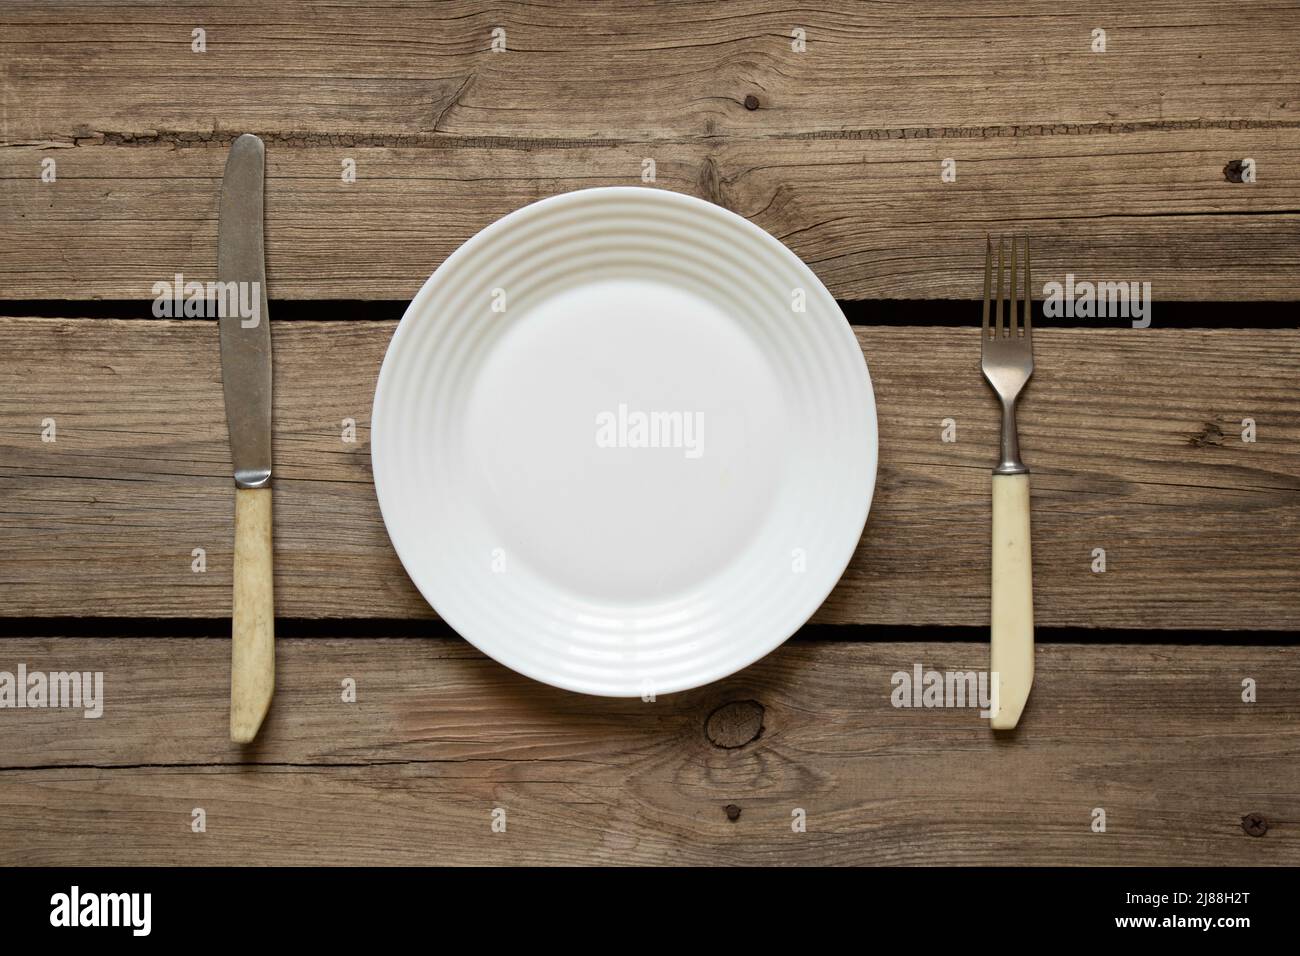 Une assiette blanche et une fourchette avec un couteau se trouvent sur une ancienne table en bois dans la cuisine à la maison, affaires de restaurant, appareils de cuisine Banque D'Images